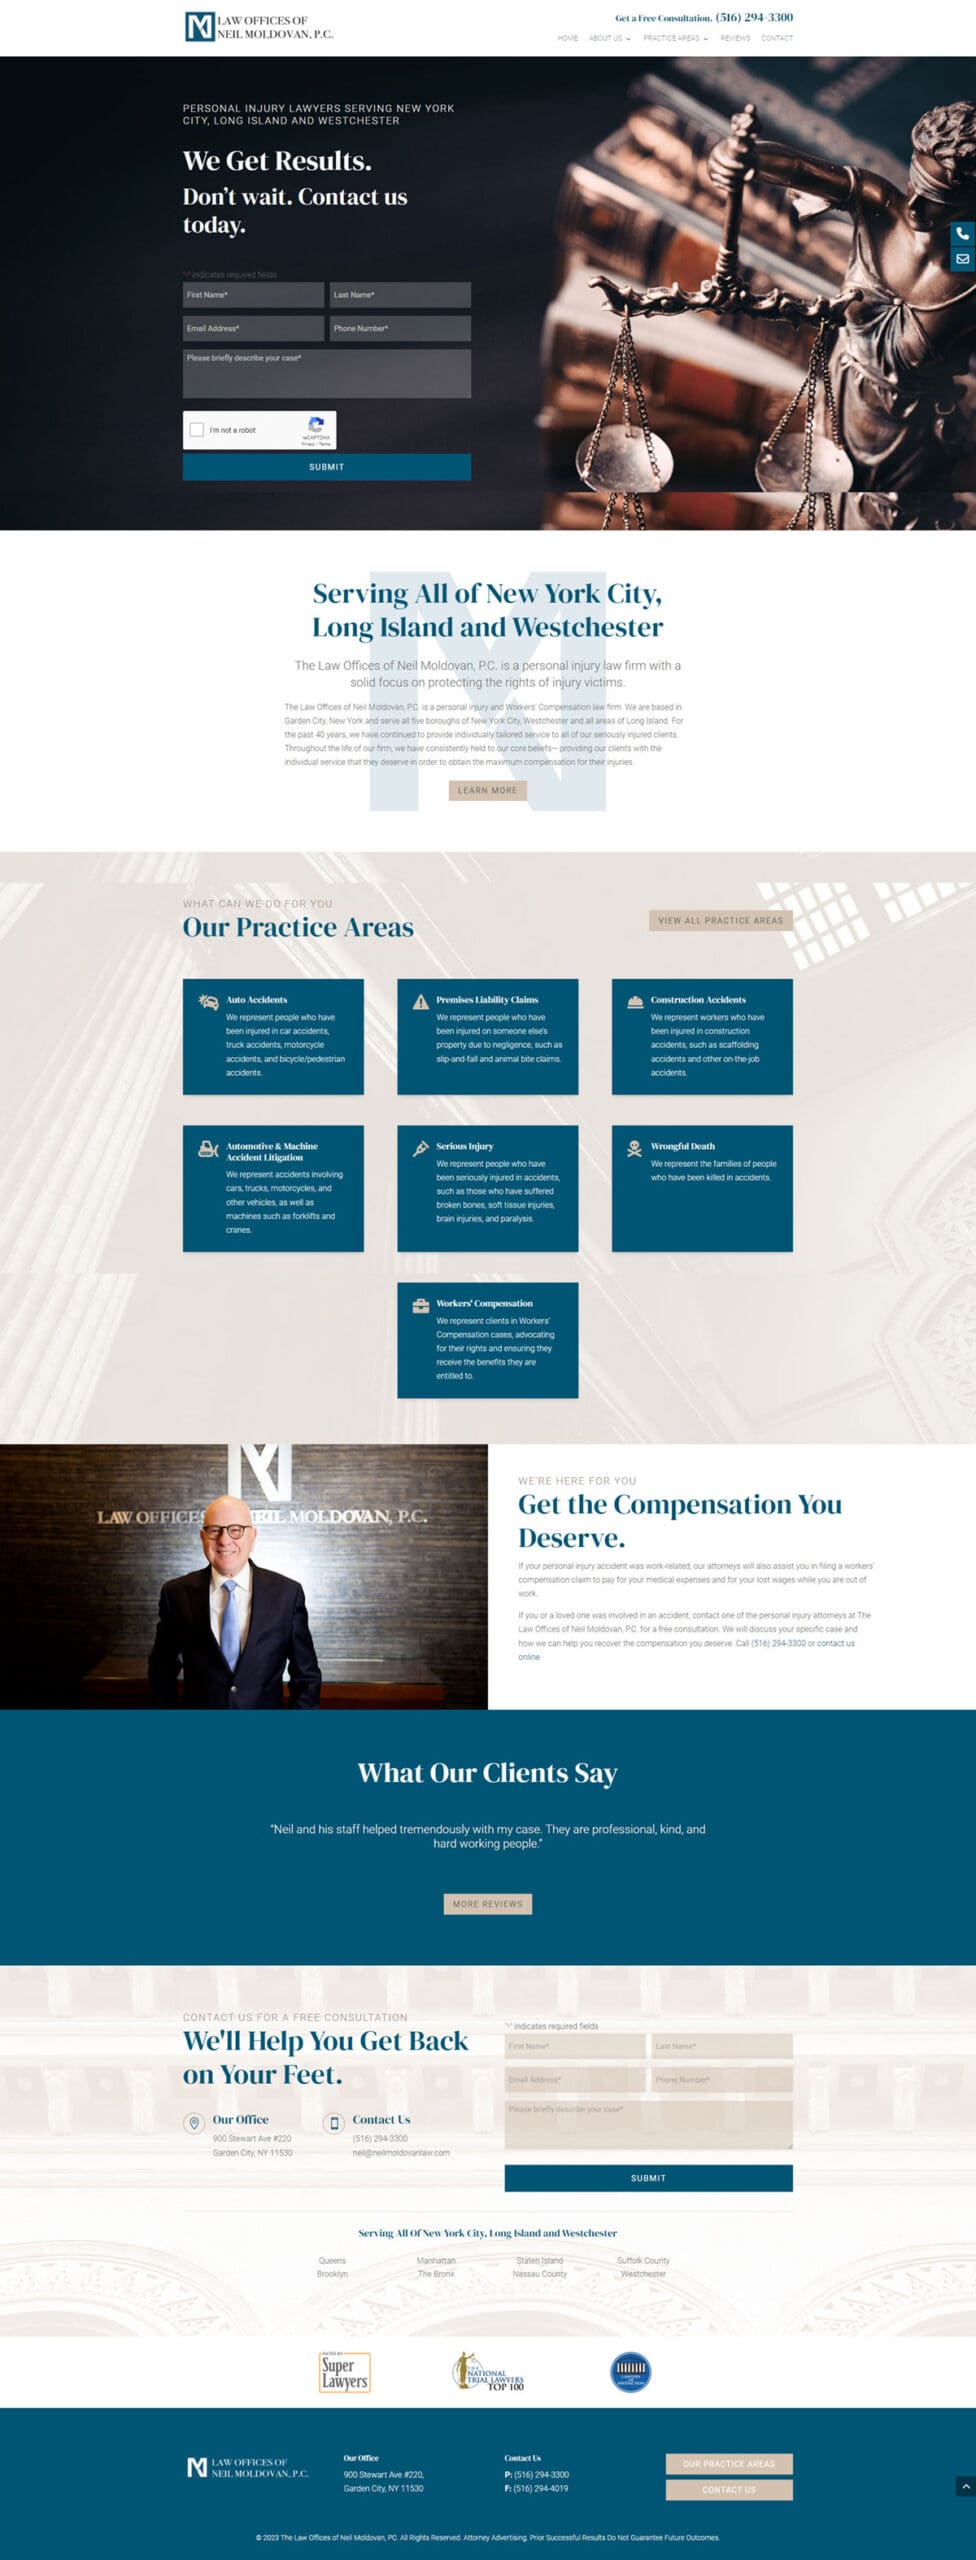 Law Office Website